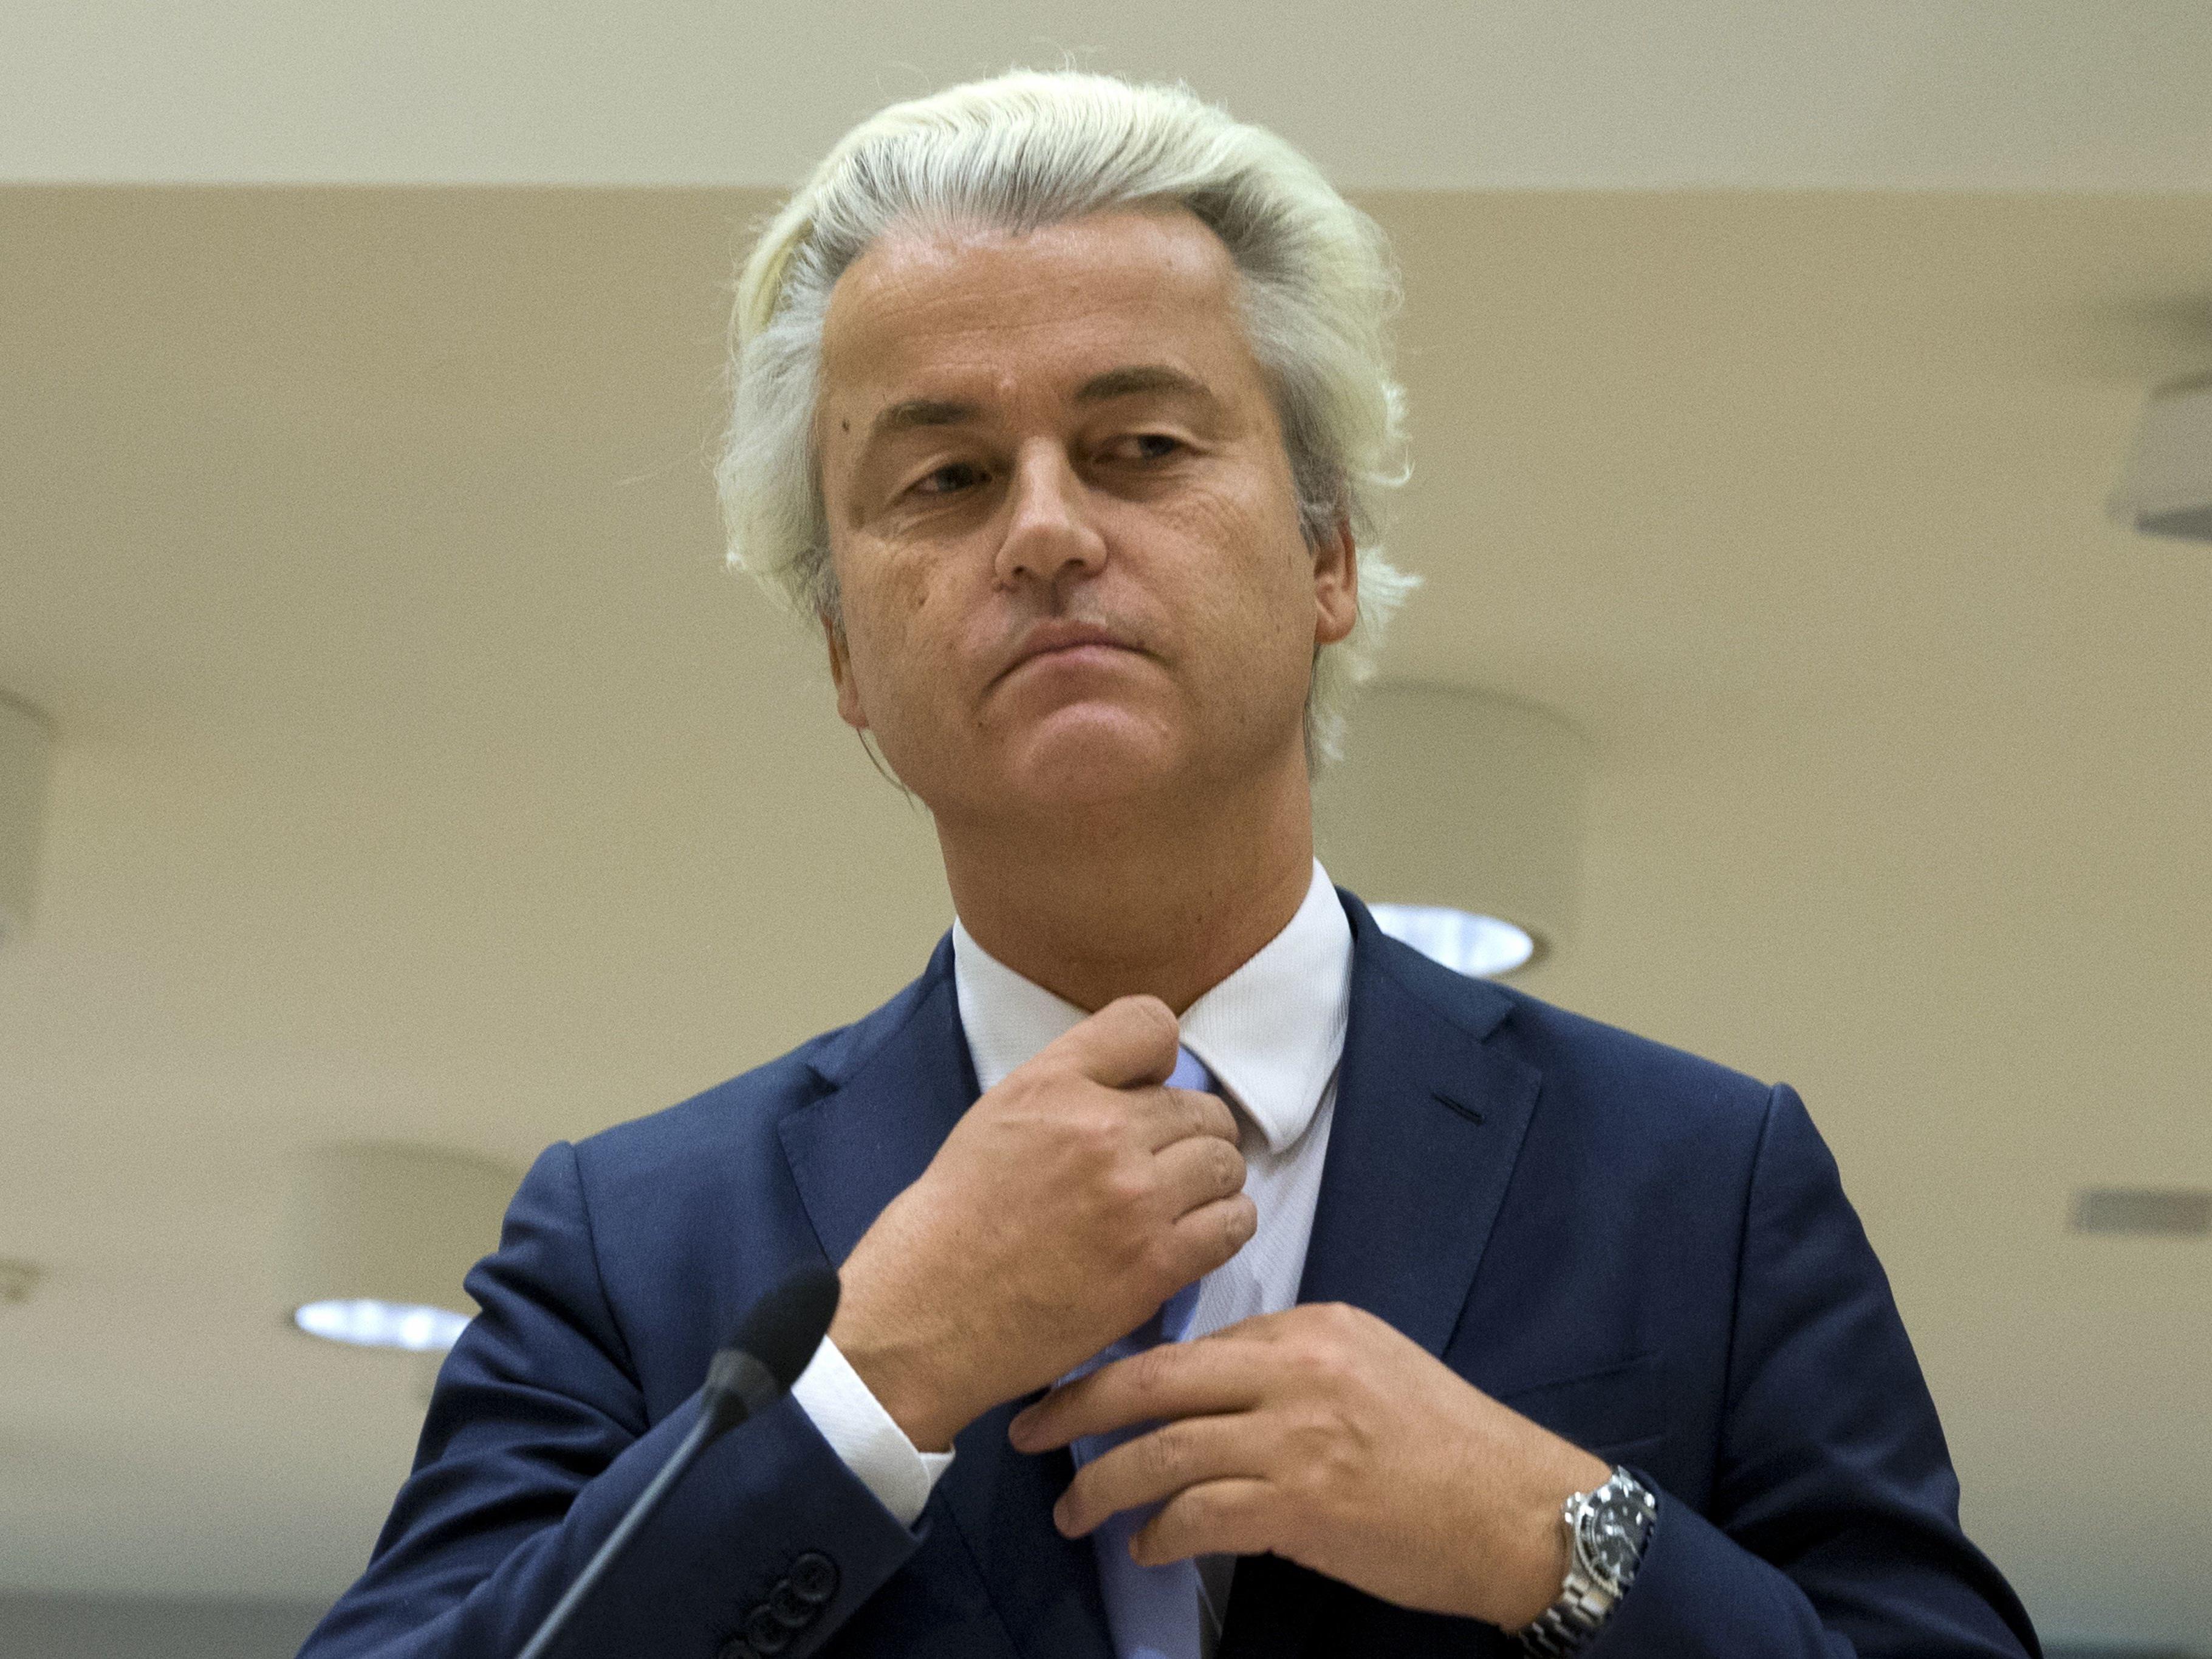 Geert Wilders wurde von einem Gericht wegen Diskriminierung und Beleidung schuldig gesprochen worden. Von einer Strafe sah das Gericht jedoch ab.